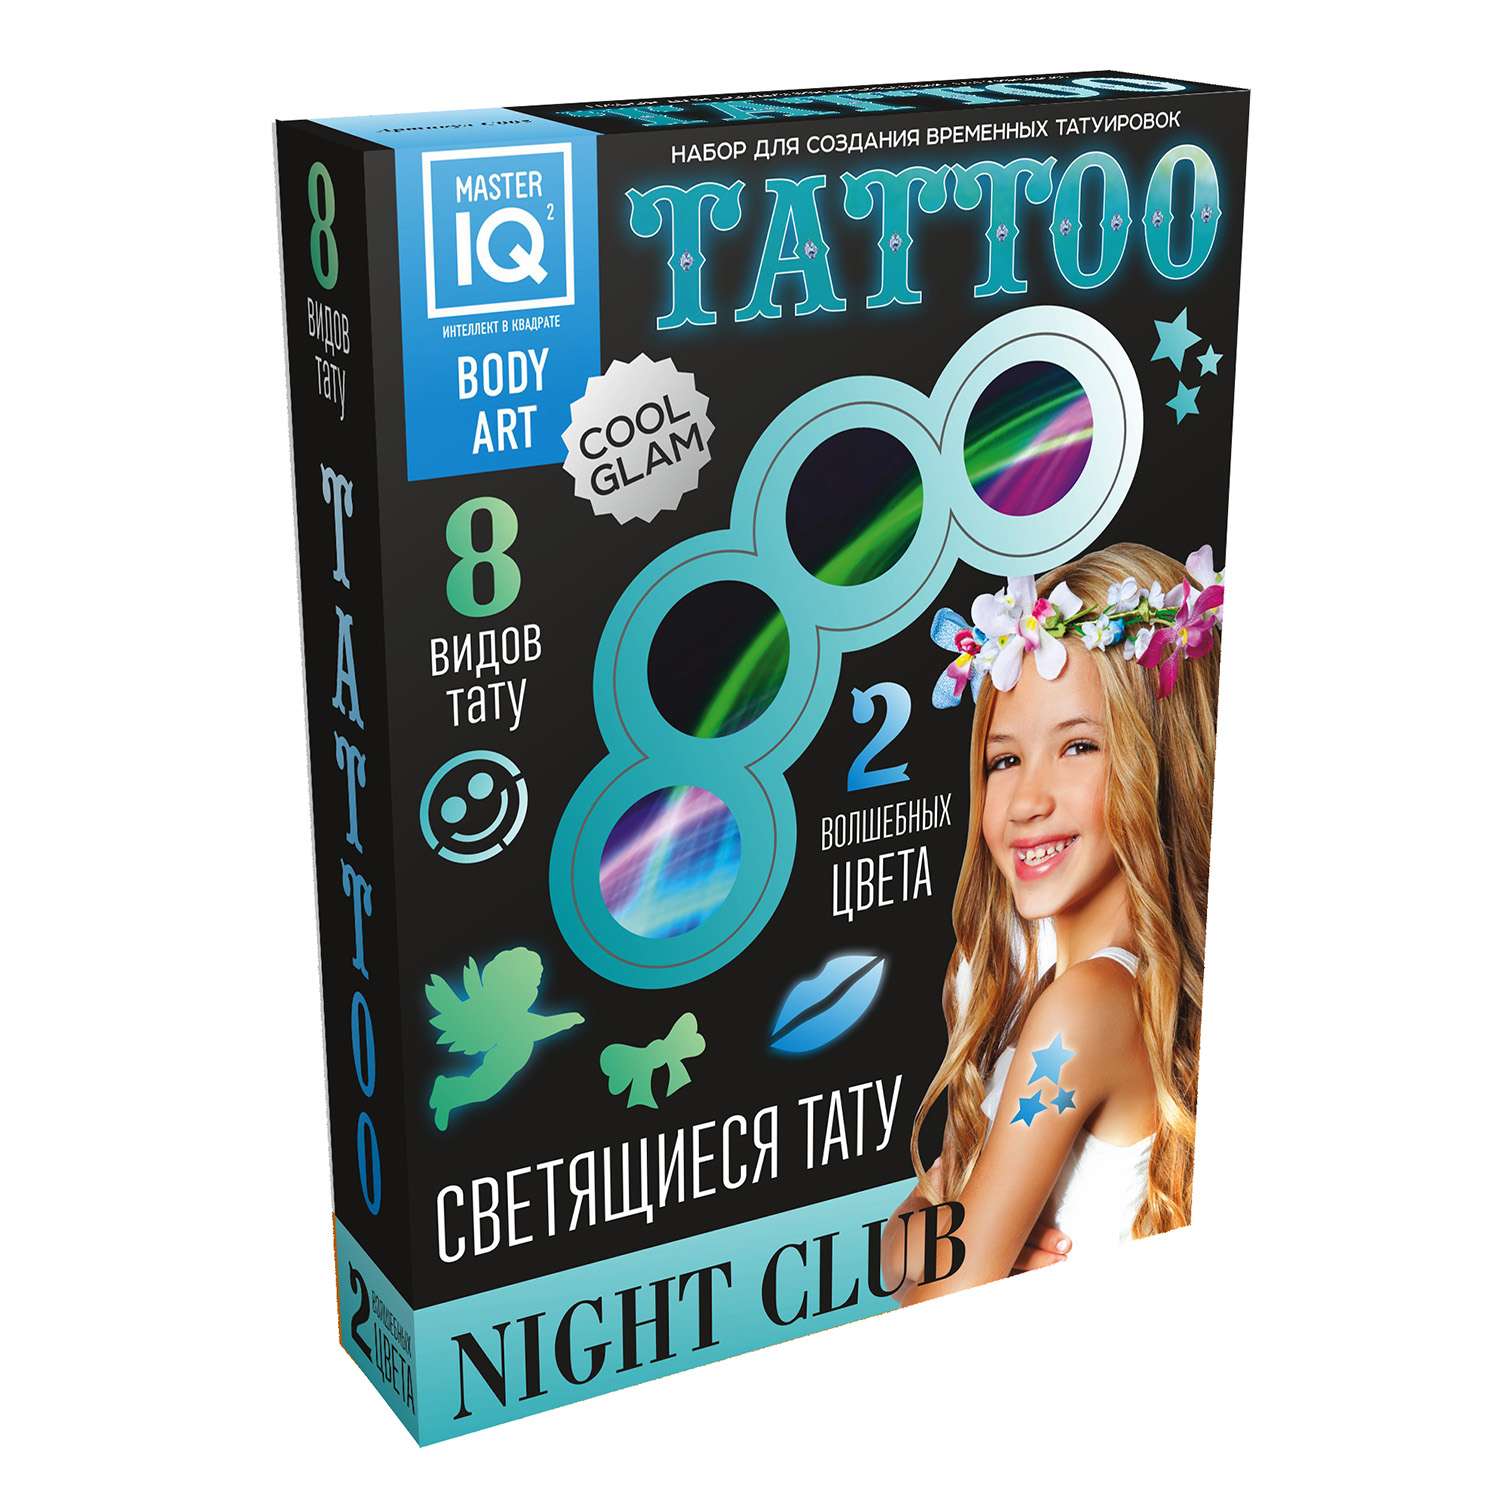 Набор Master IQ Для создания временных татуировок Night club - фото 1